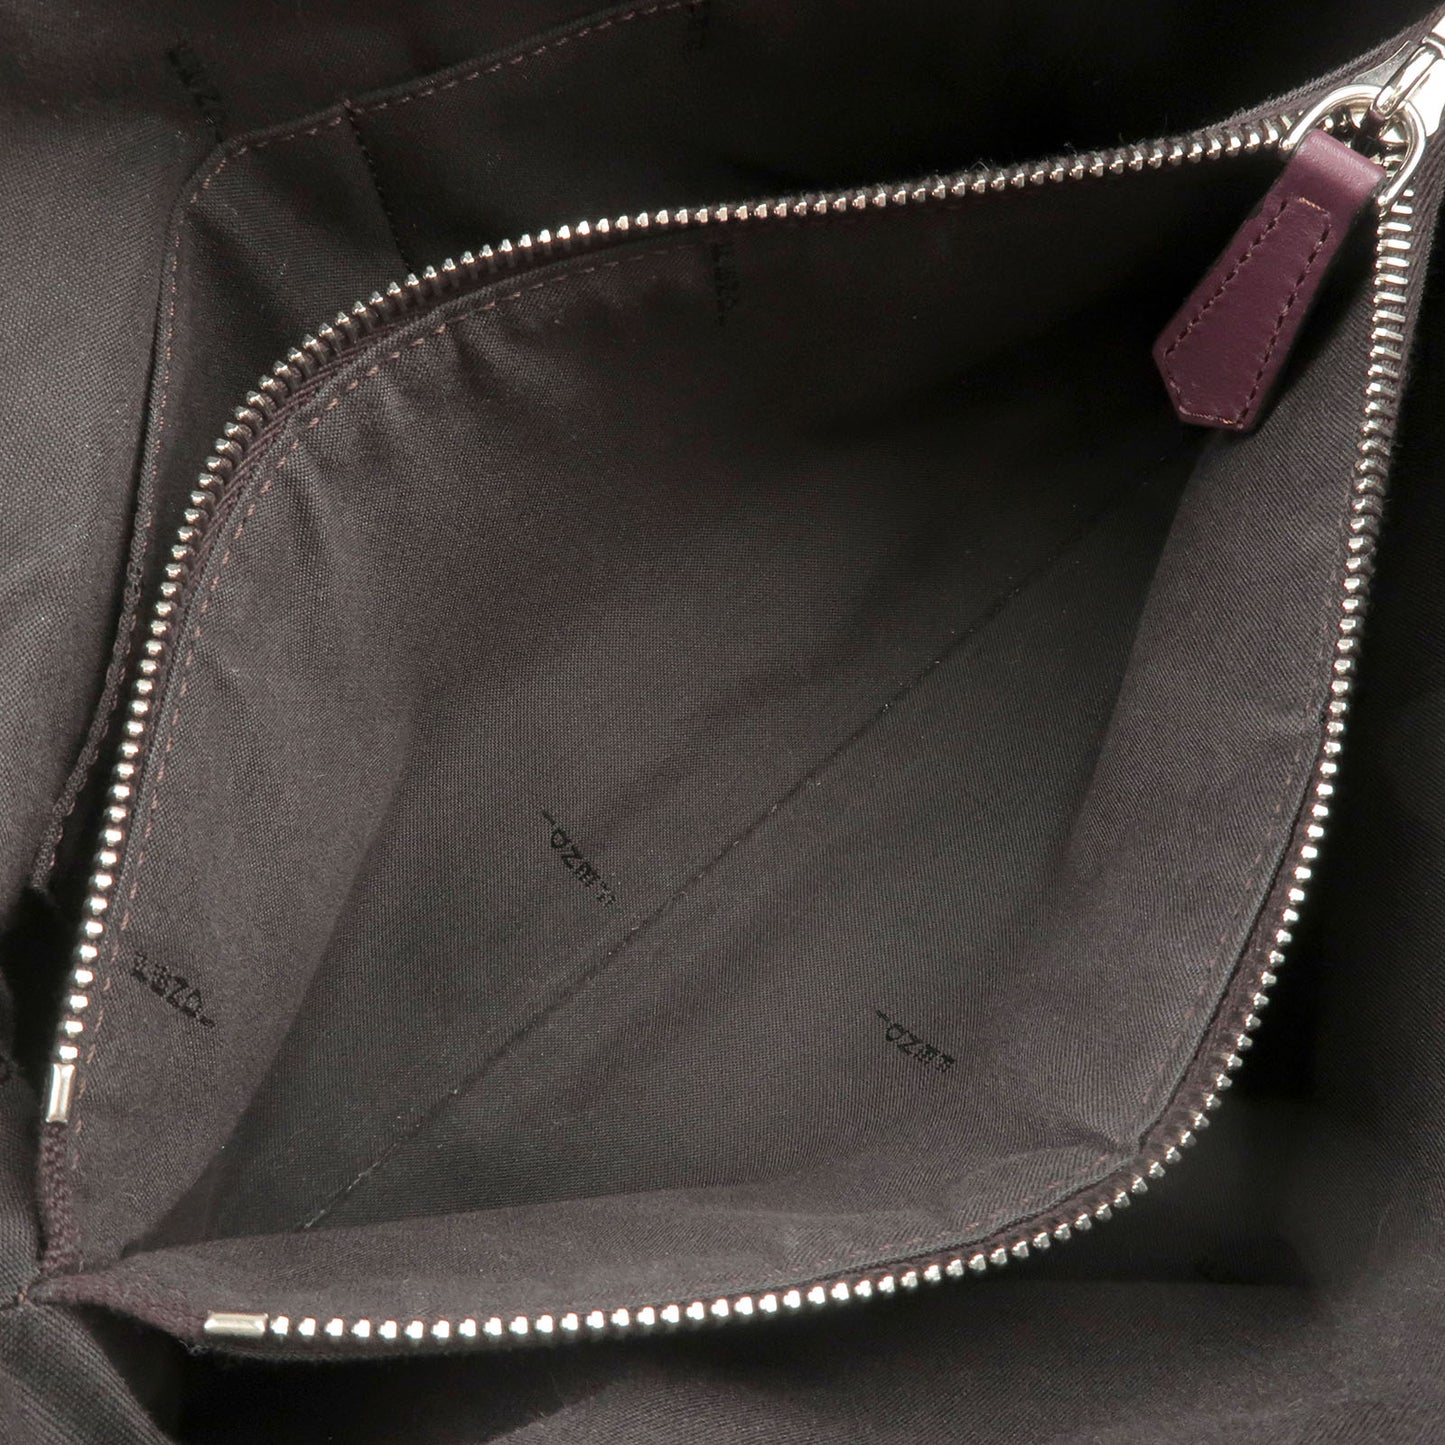 FENDI By The Way Leather 2Way Bag Shoulder Bag Beige 8BL124